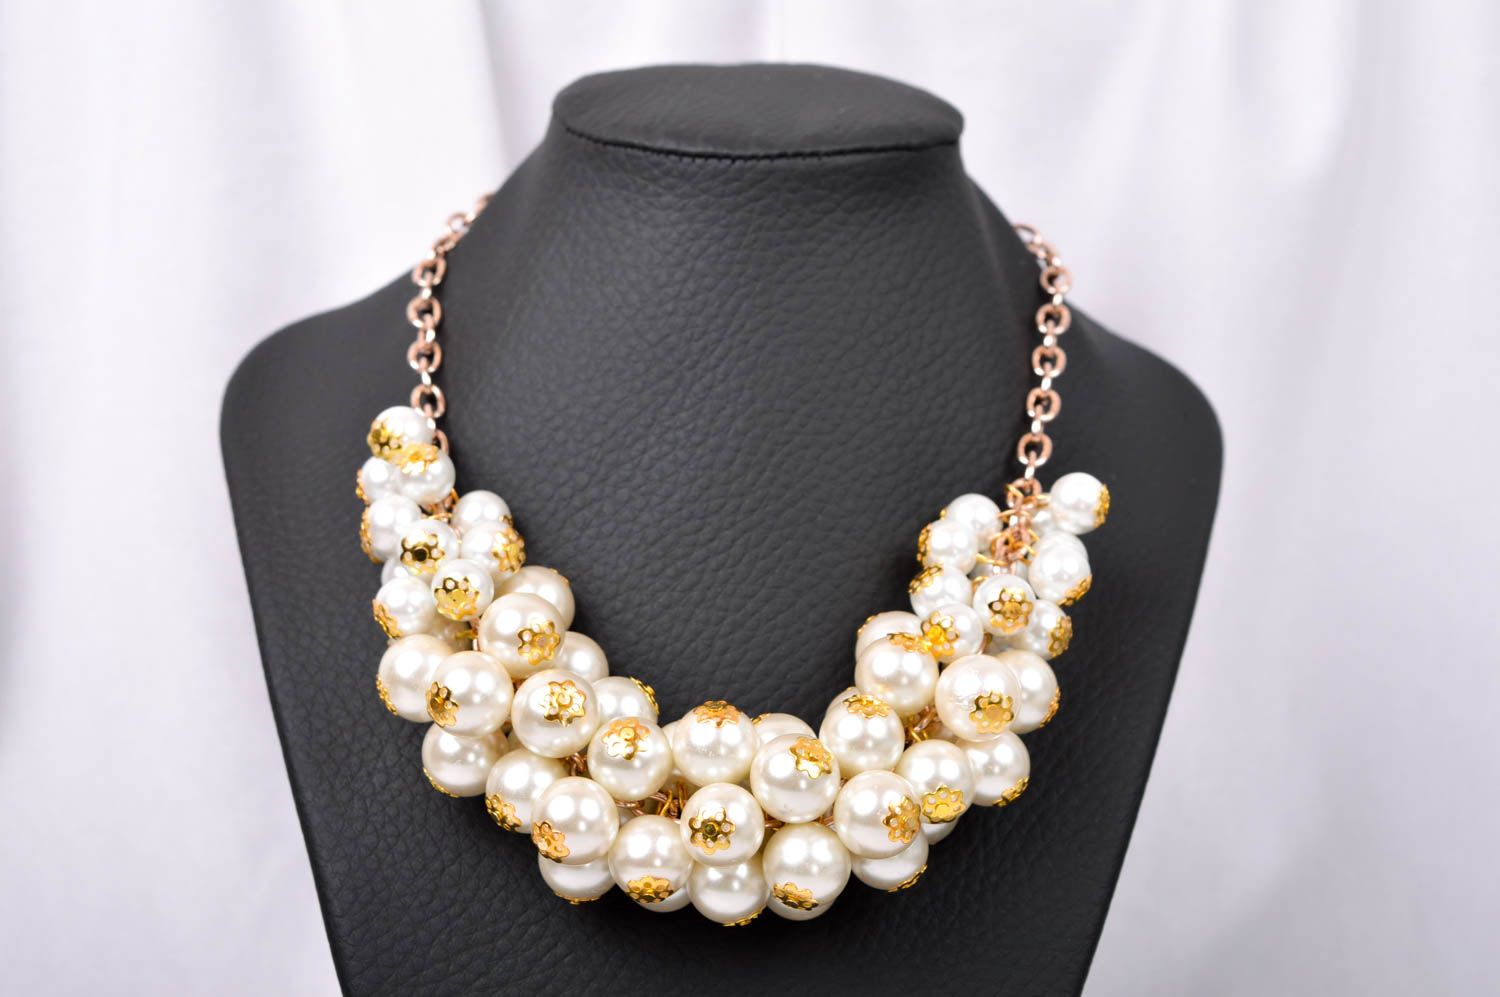 Handmade elegant massive necklace stylish beaded necklace unusual jewelry photo 1